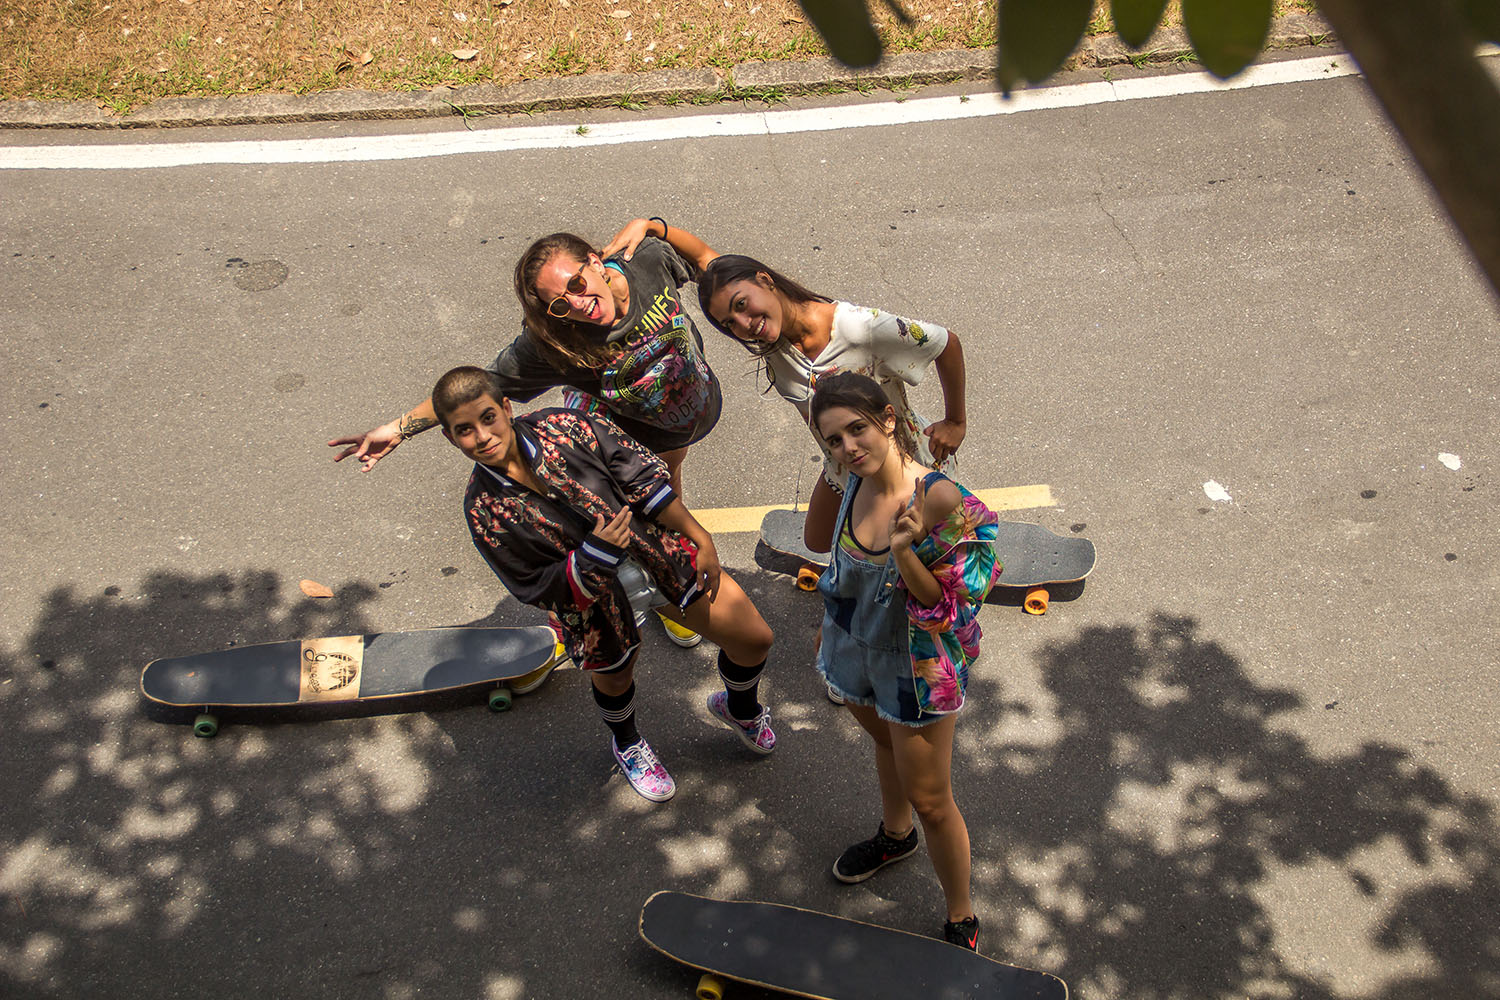 Longboard Dancing Guanabara Boards Rio de Janeiro